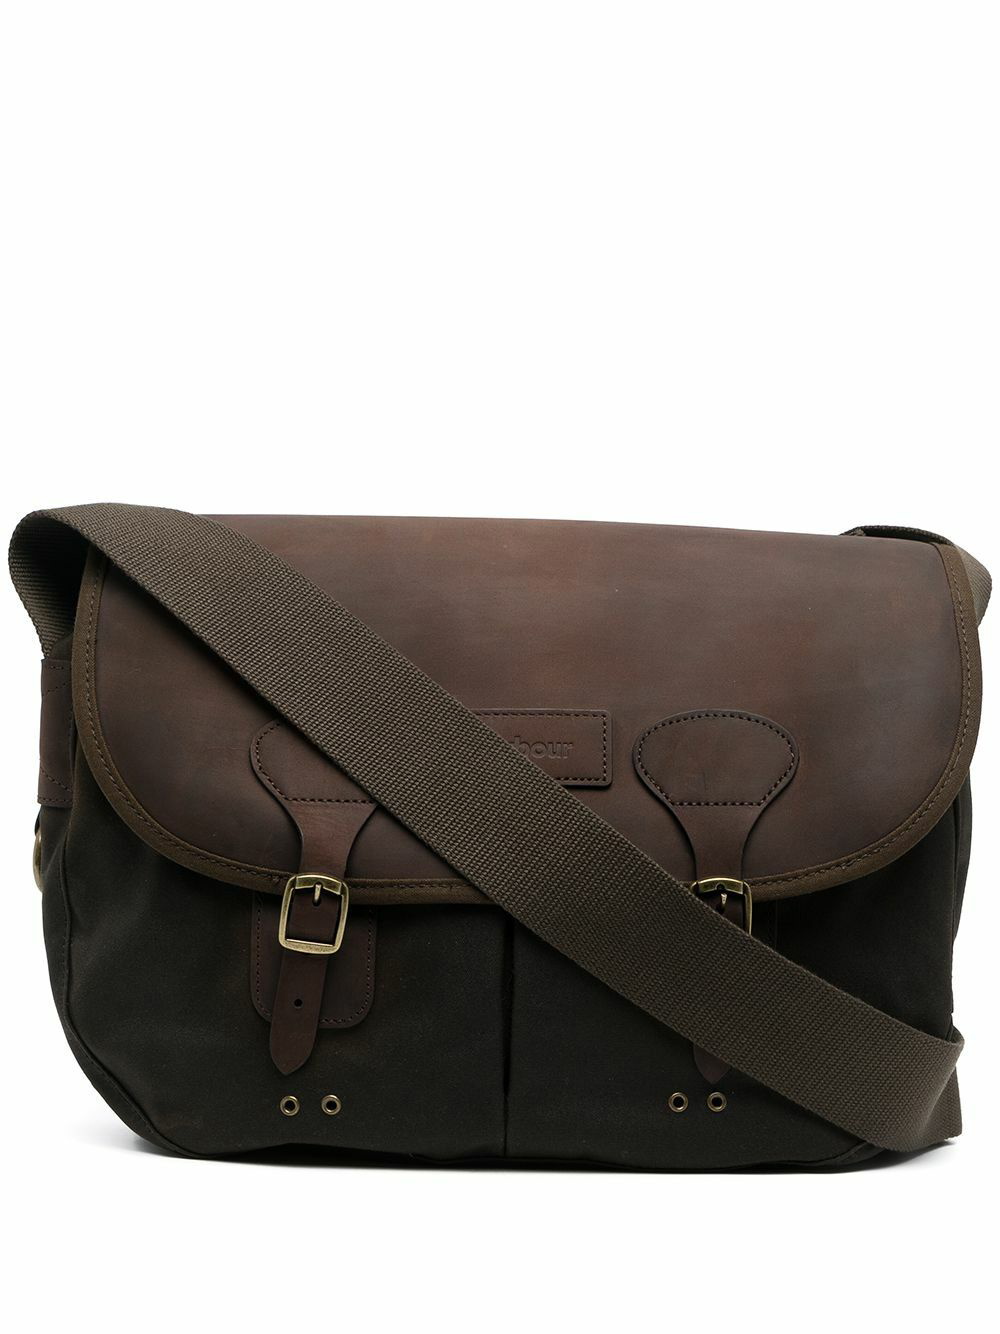 BARBOUR - Leather Shoulder Bag Barbour